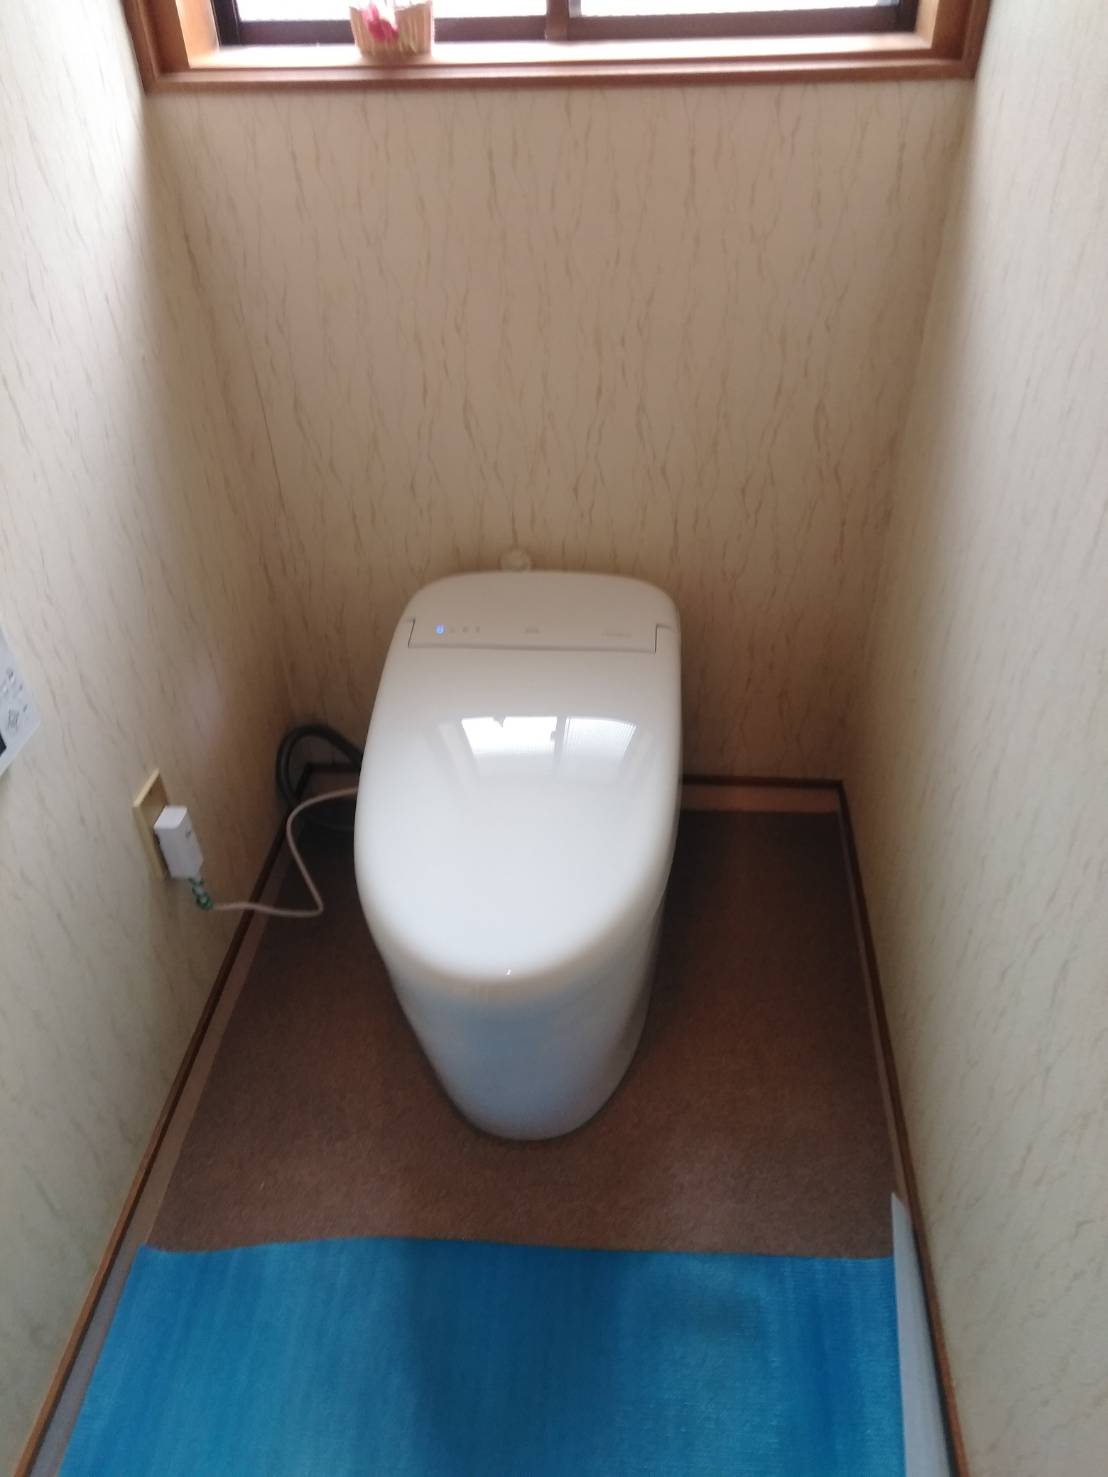 トイレ交換施工事例/珠洲市